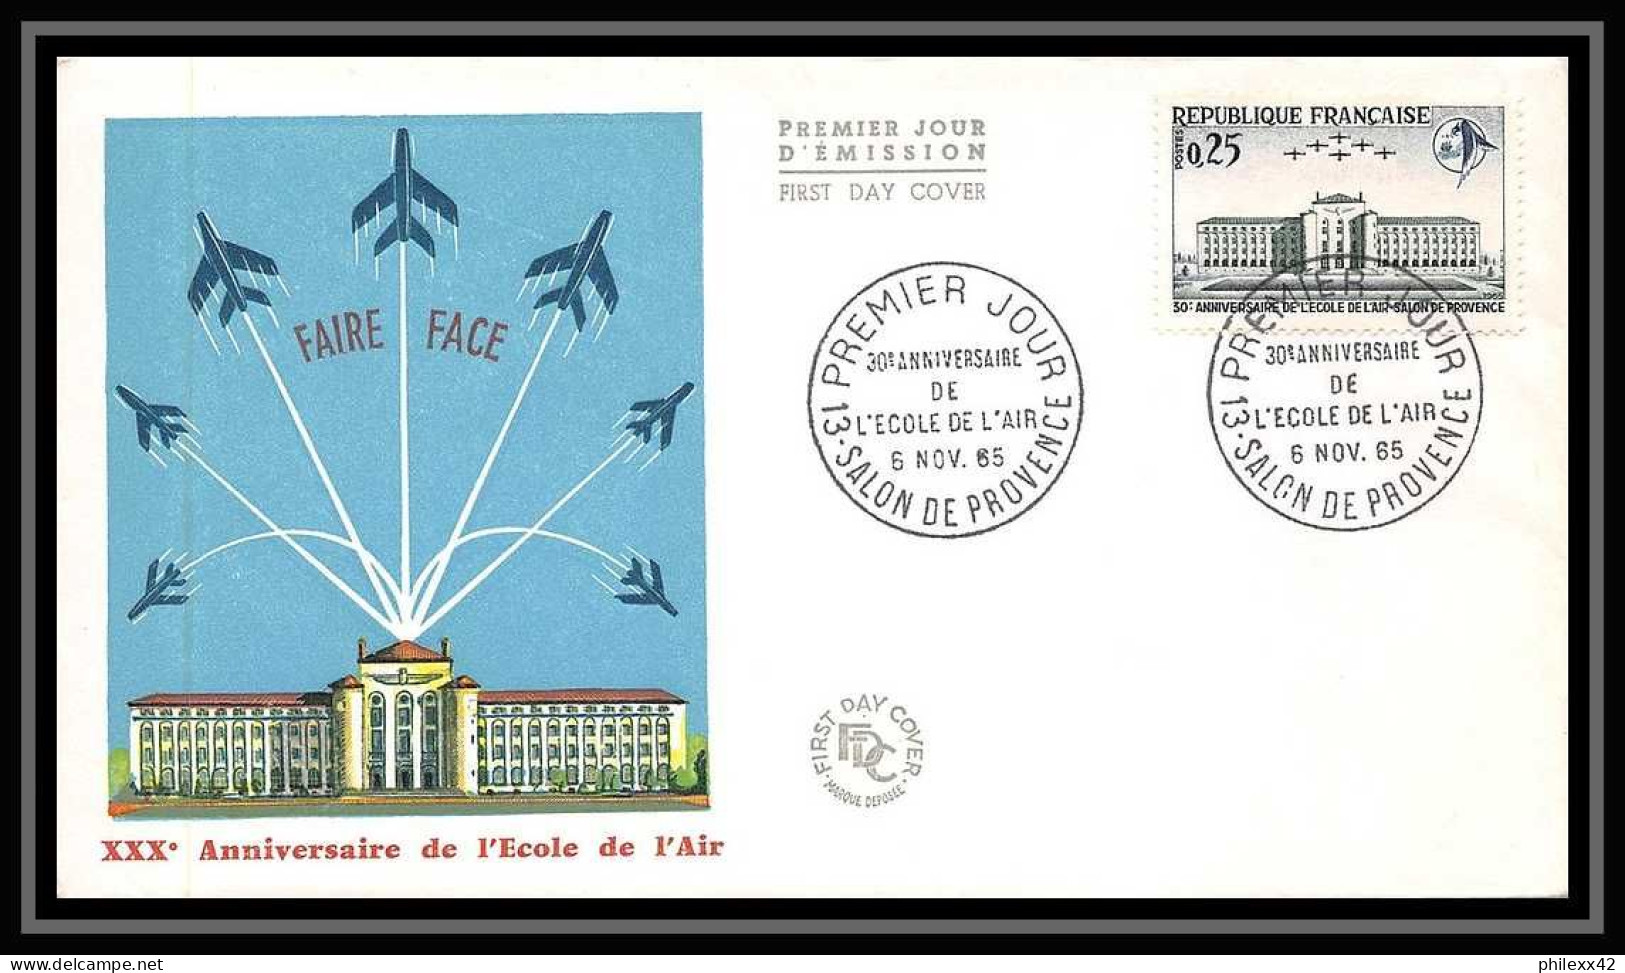 111314 lot de 5 Lettre cover + Carte maximum (card) Bouches du rhone N°1463 ecole d l'air 1965 Marseille 